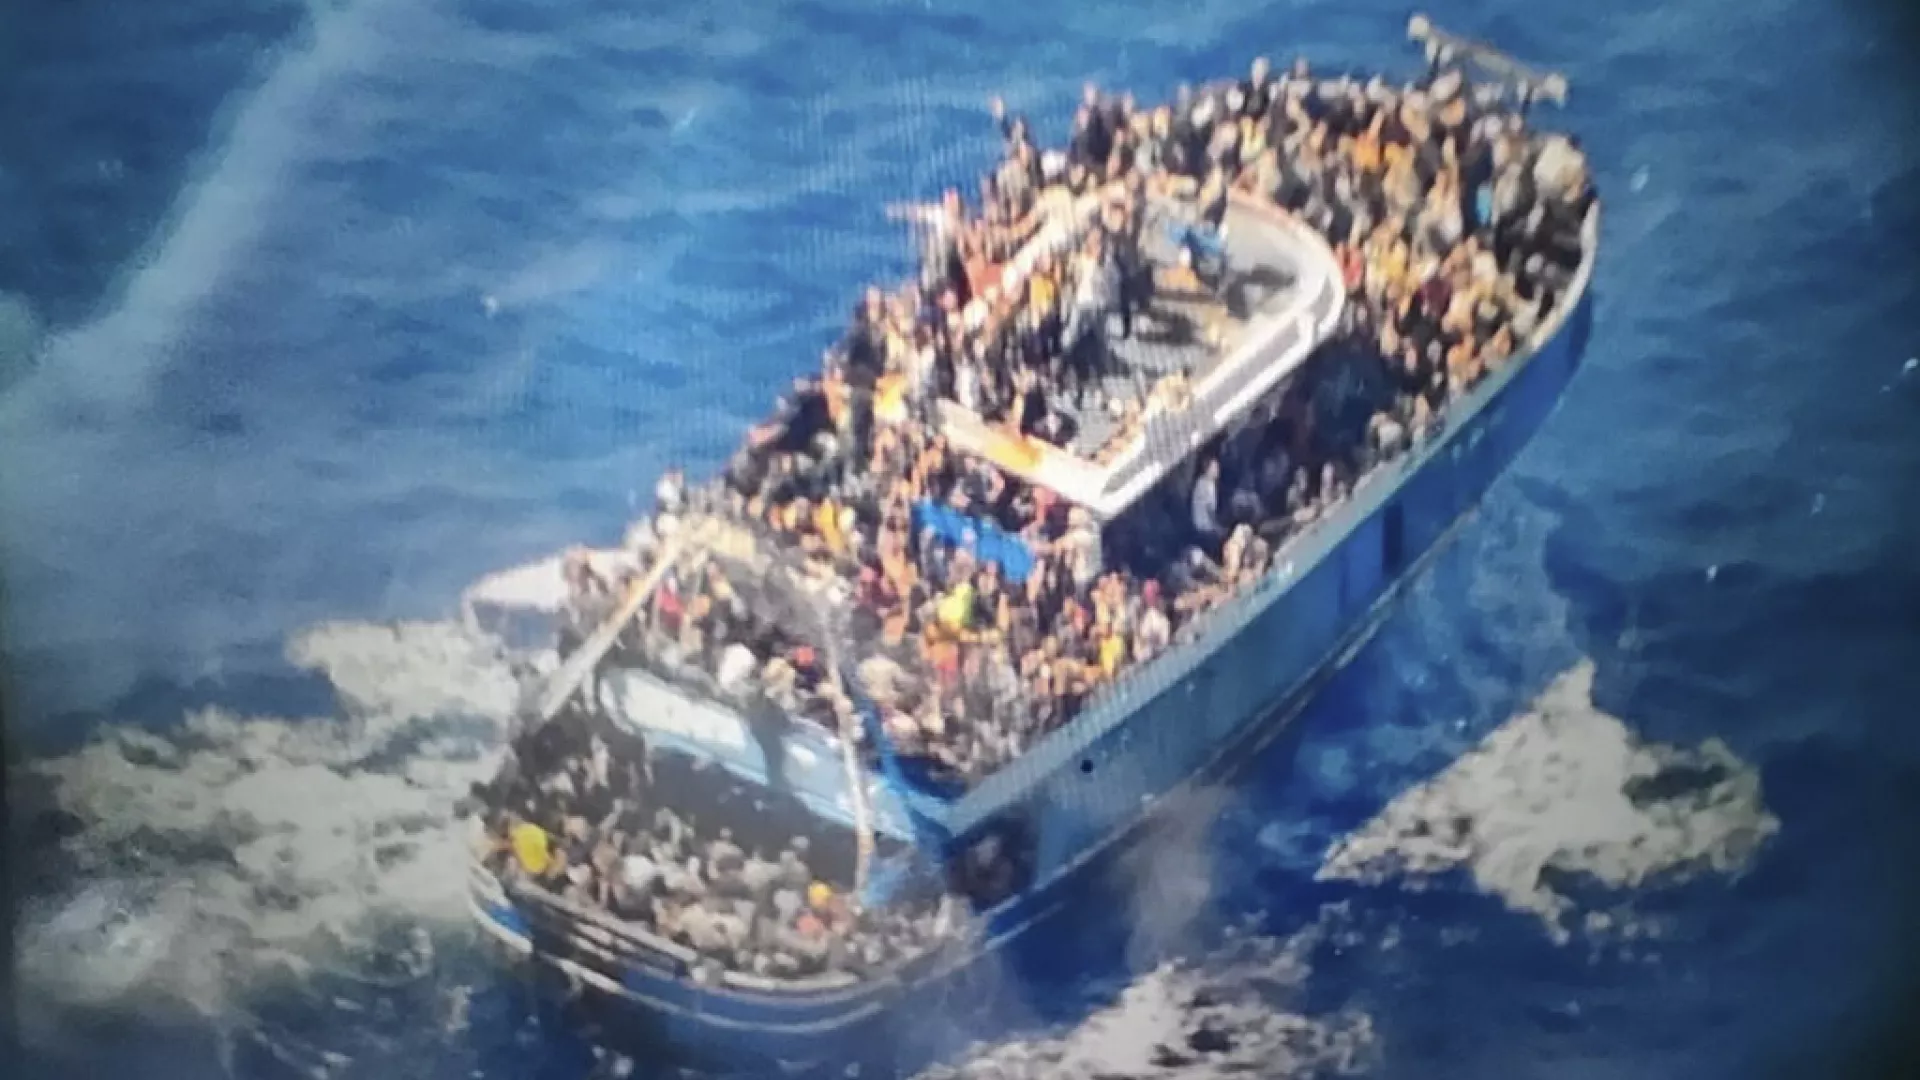 İnsan hakları örgütleri: Yunanistan göçmen trajedisini gerektiği gibi soruşturmadı